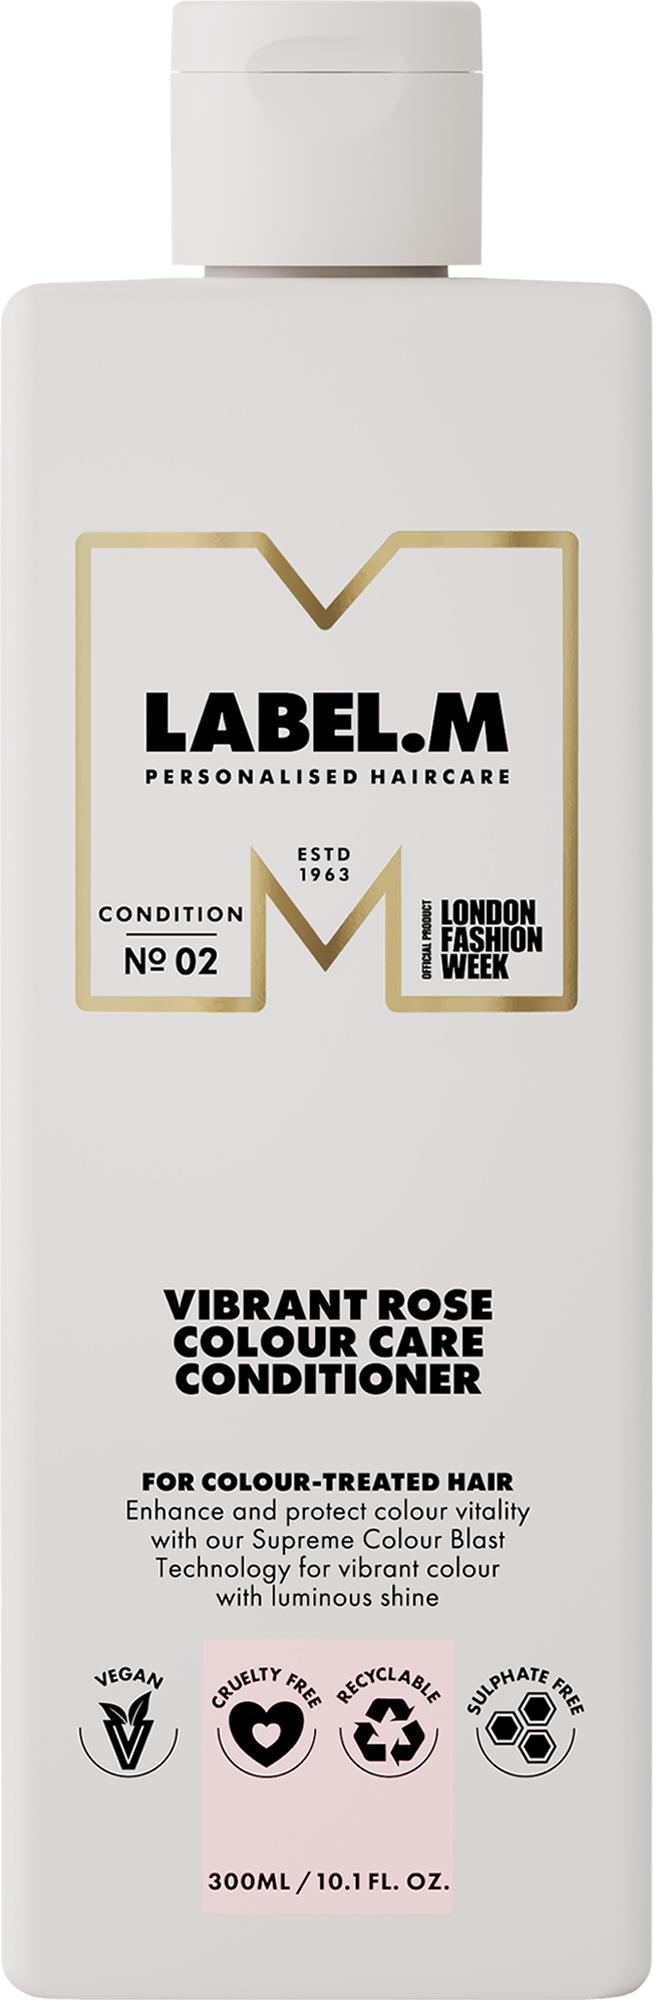 Label.m Vibrant Rose кондиционер для окрашенных волос 300мл